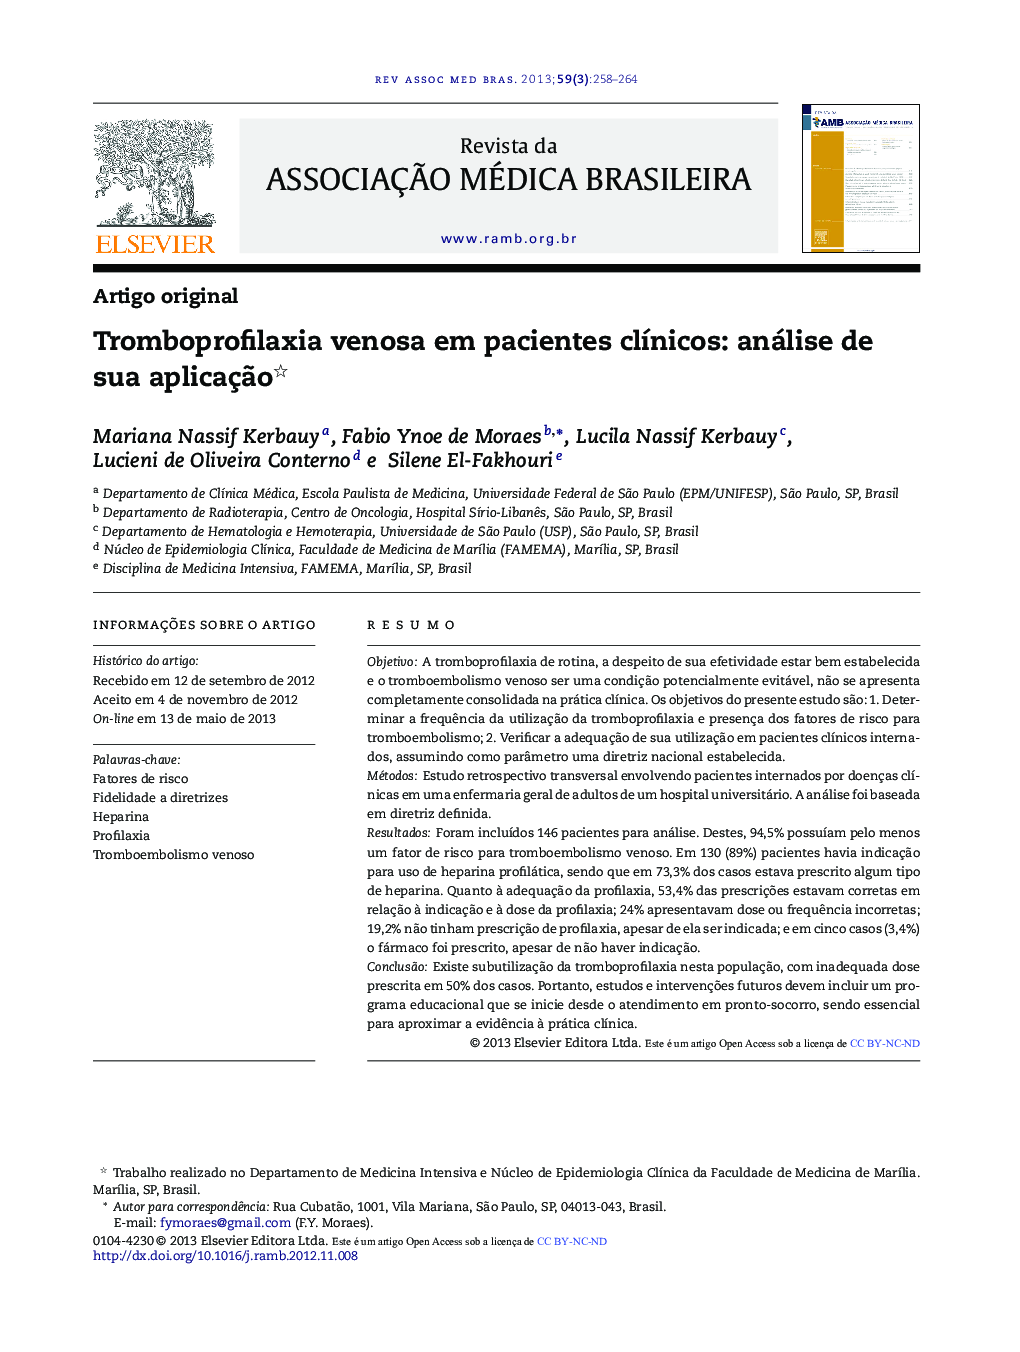 Tromboprofilaxia venosa em pacientes clínicos: análise de sua aplicação 